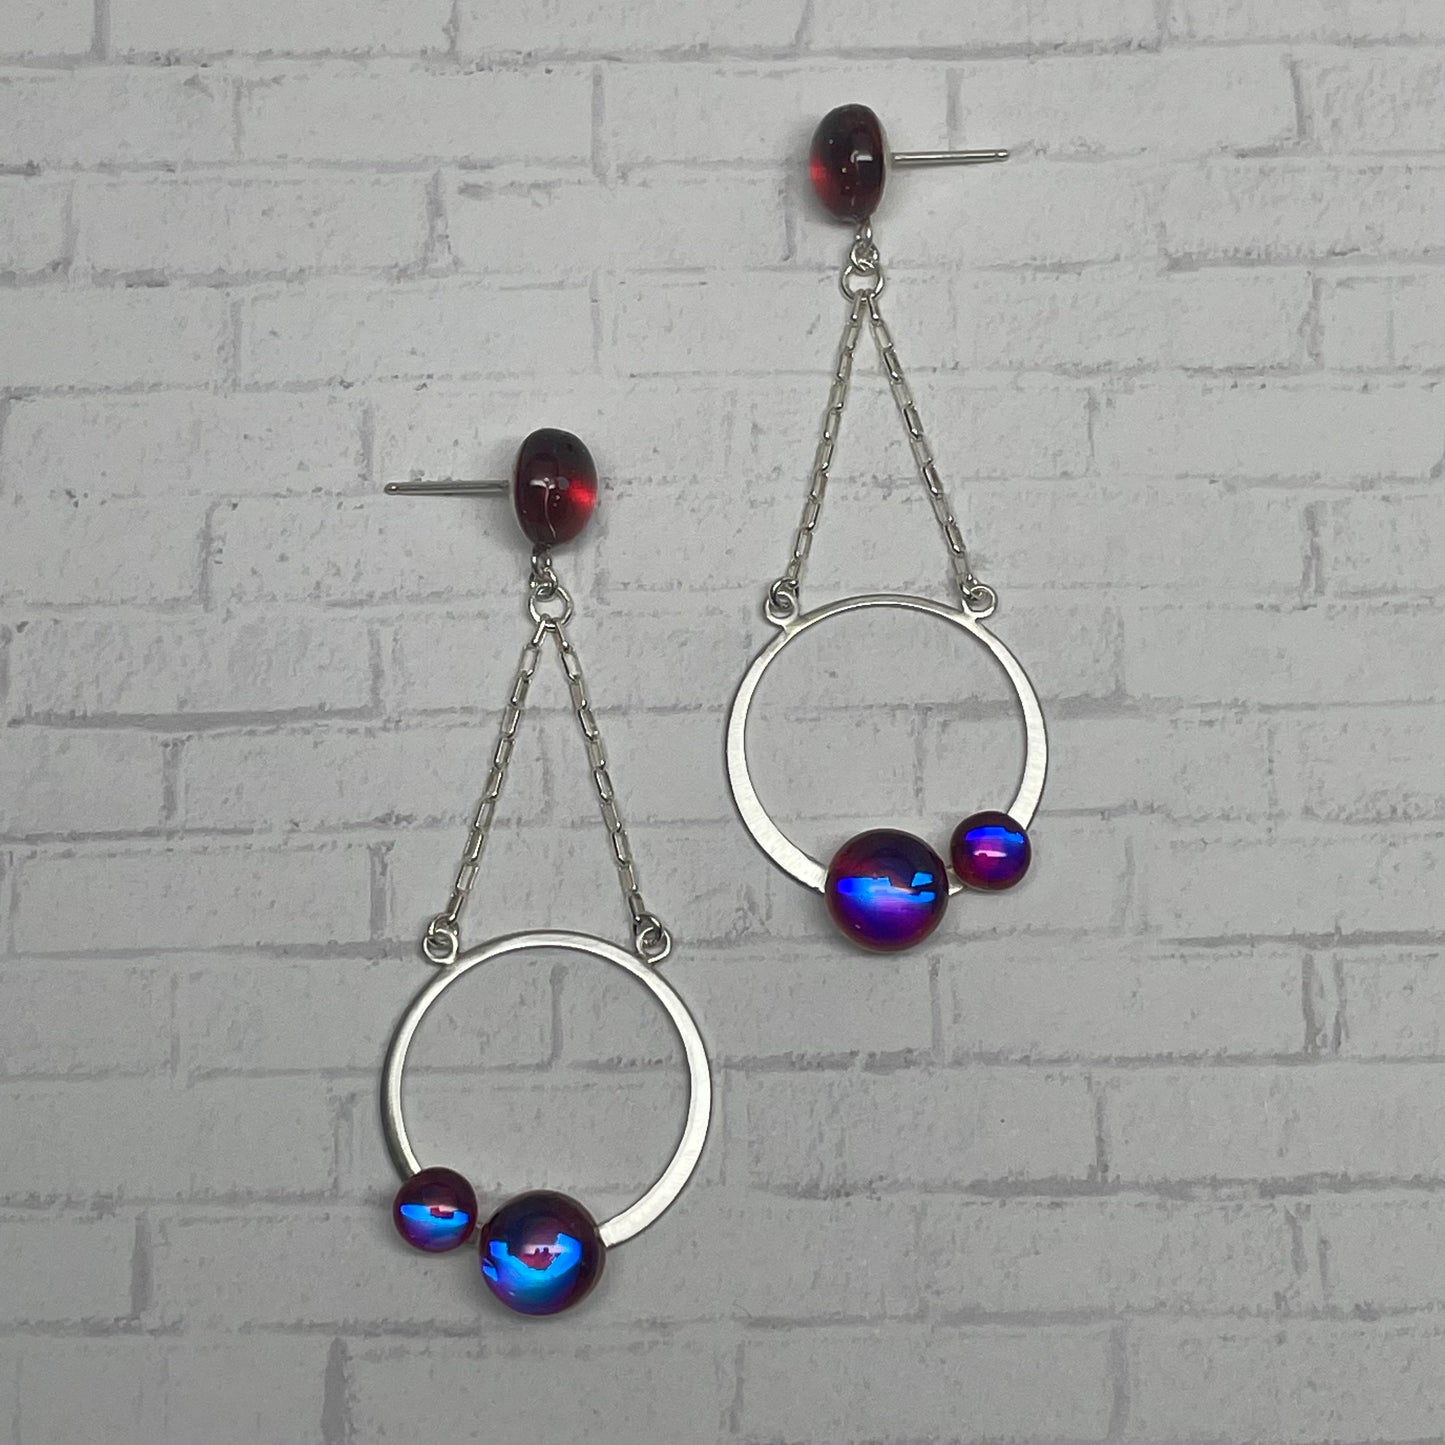 Double Orbit Earrings - Juicy Berry